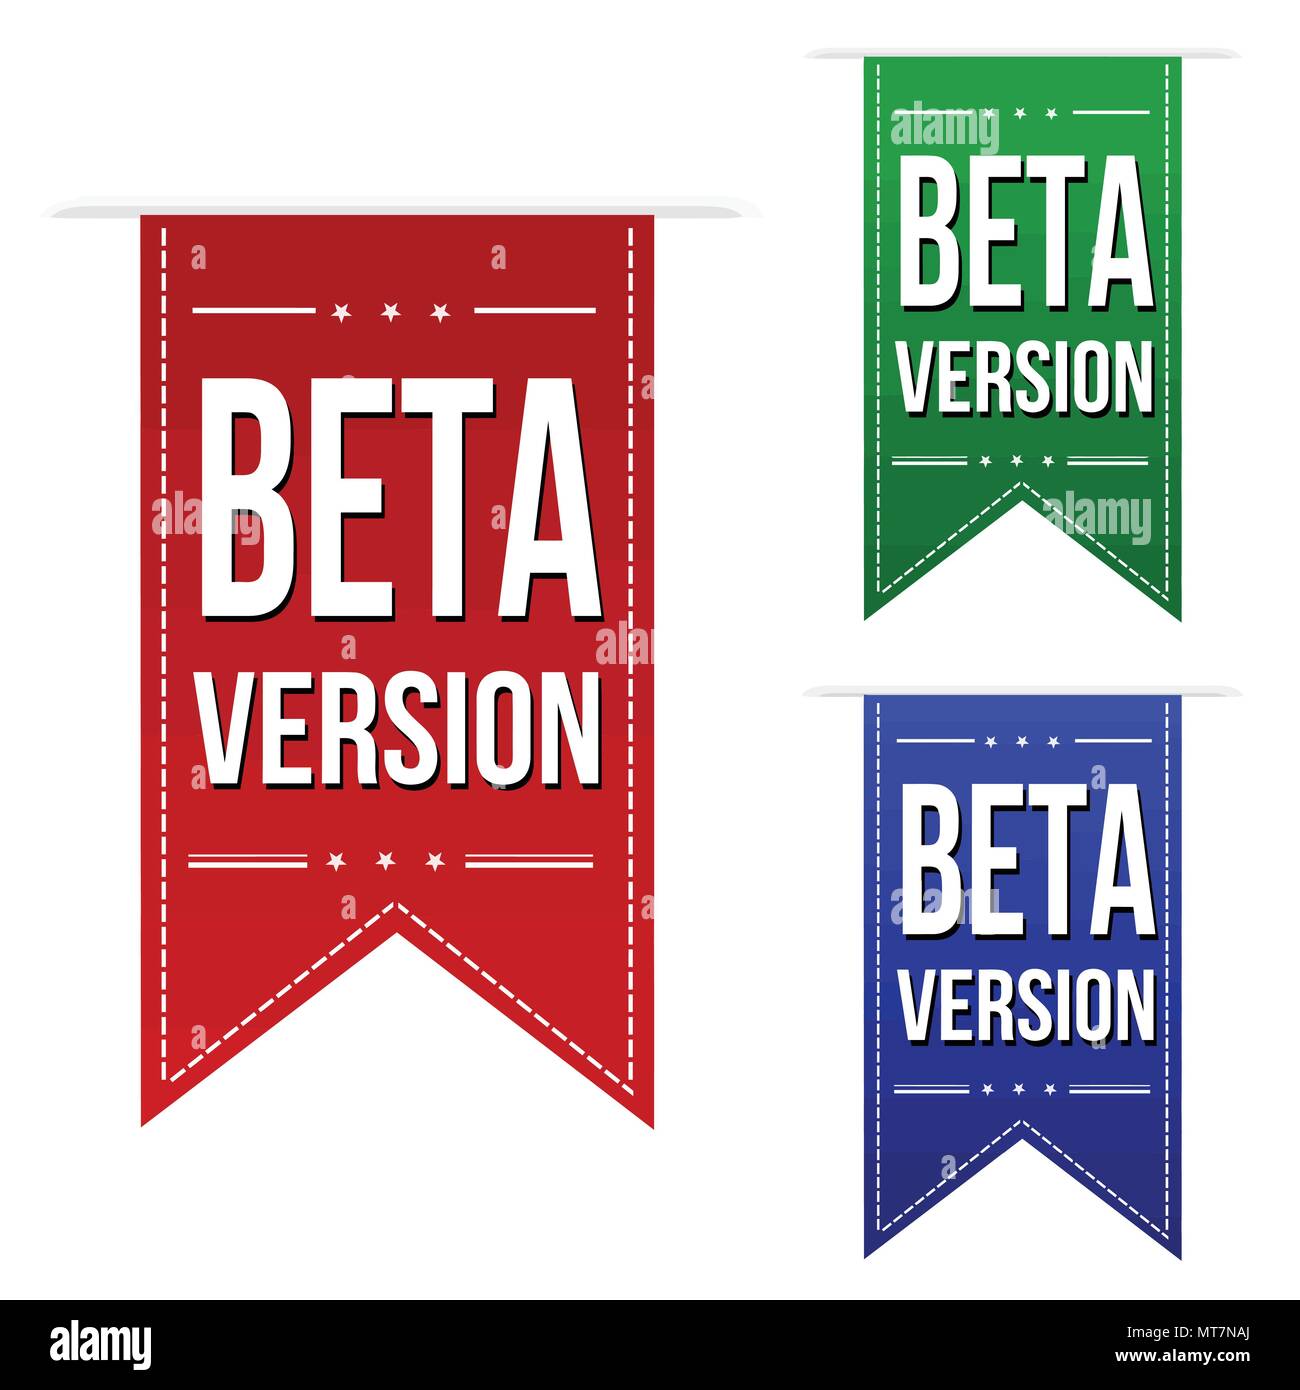 Beta version banner design set on white background, vector illustration Stock Vector